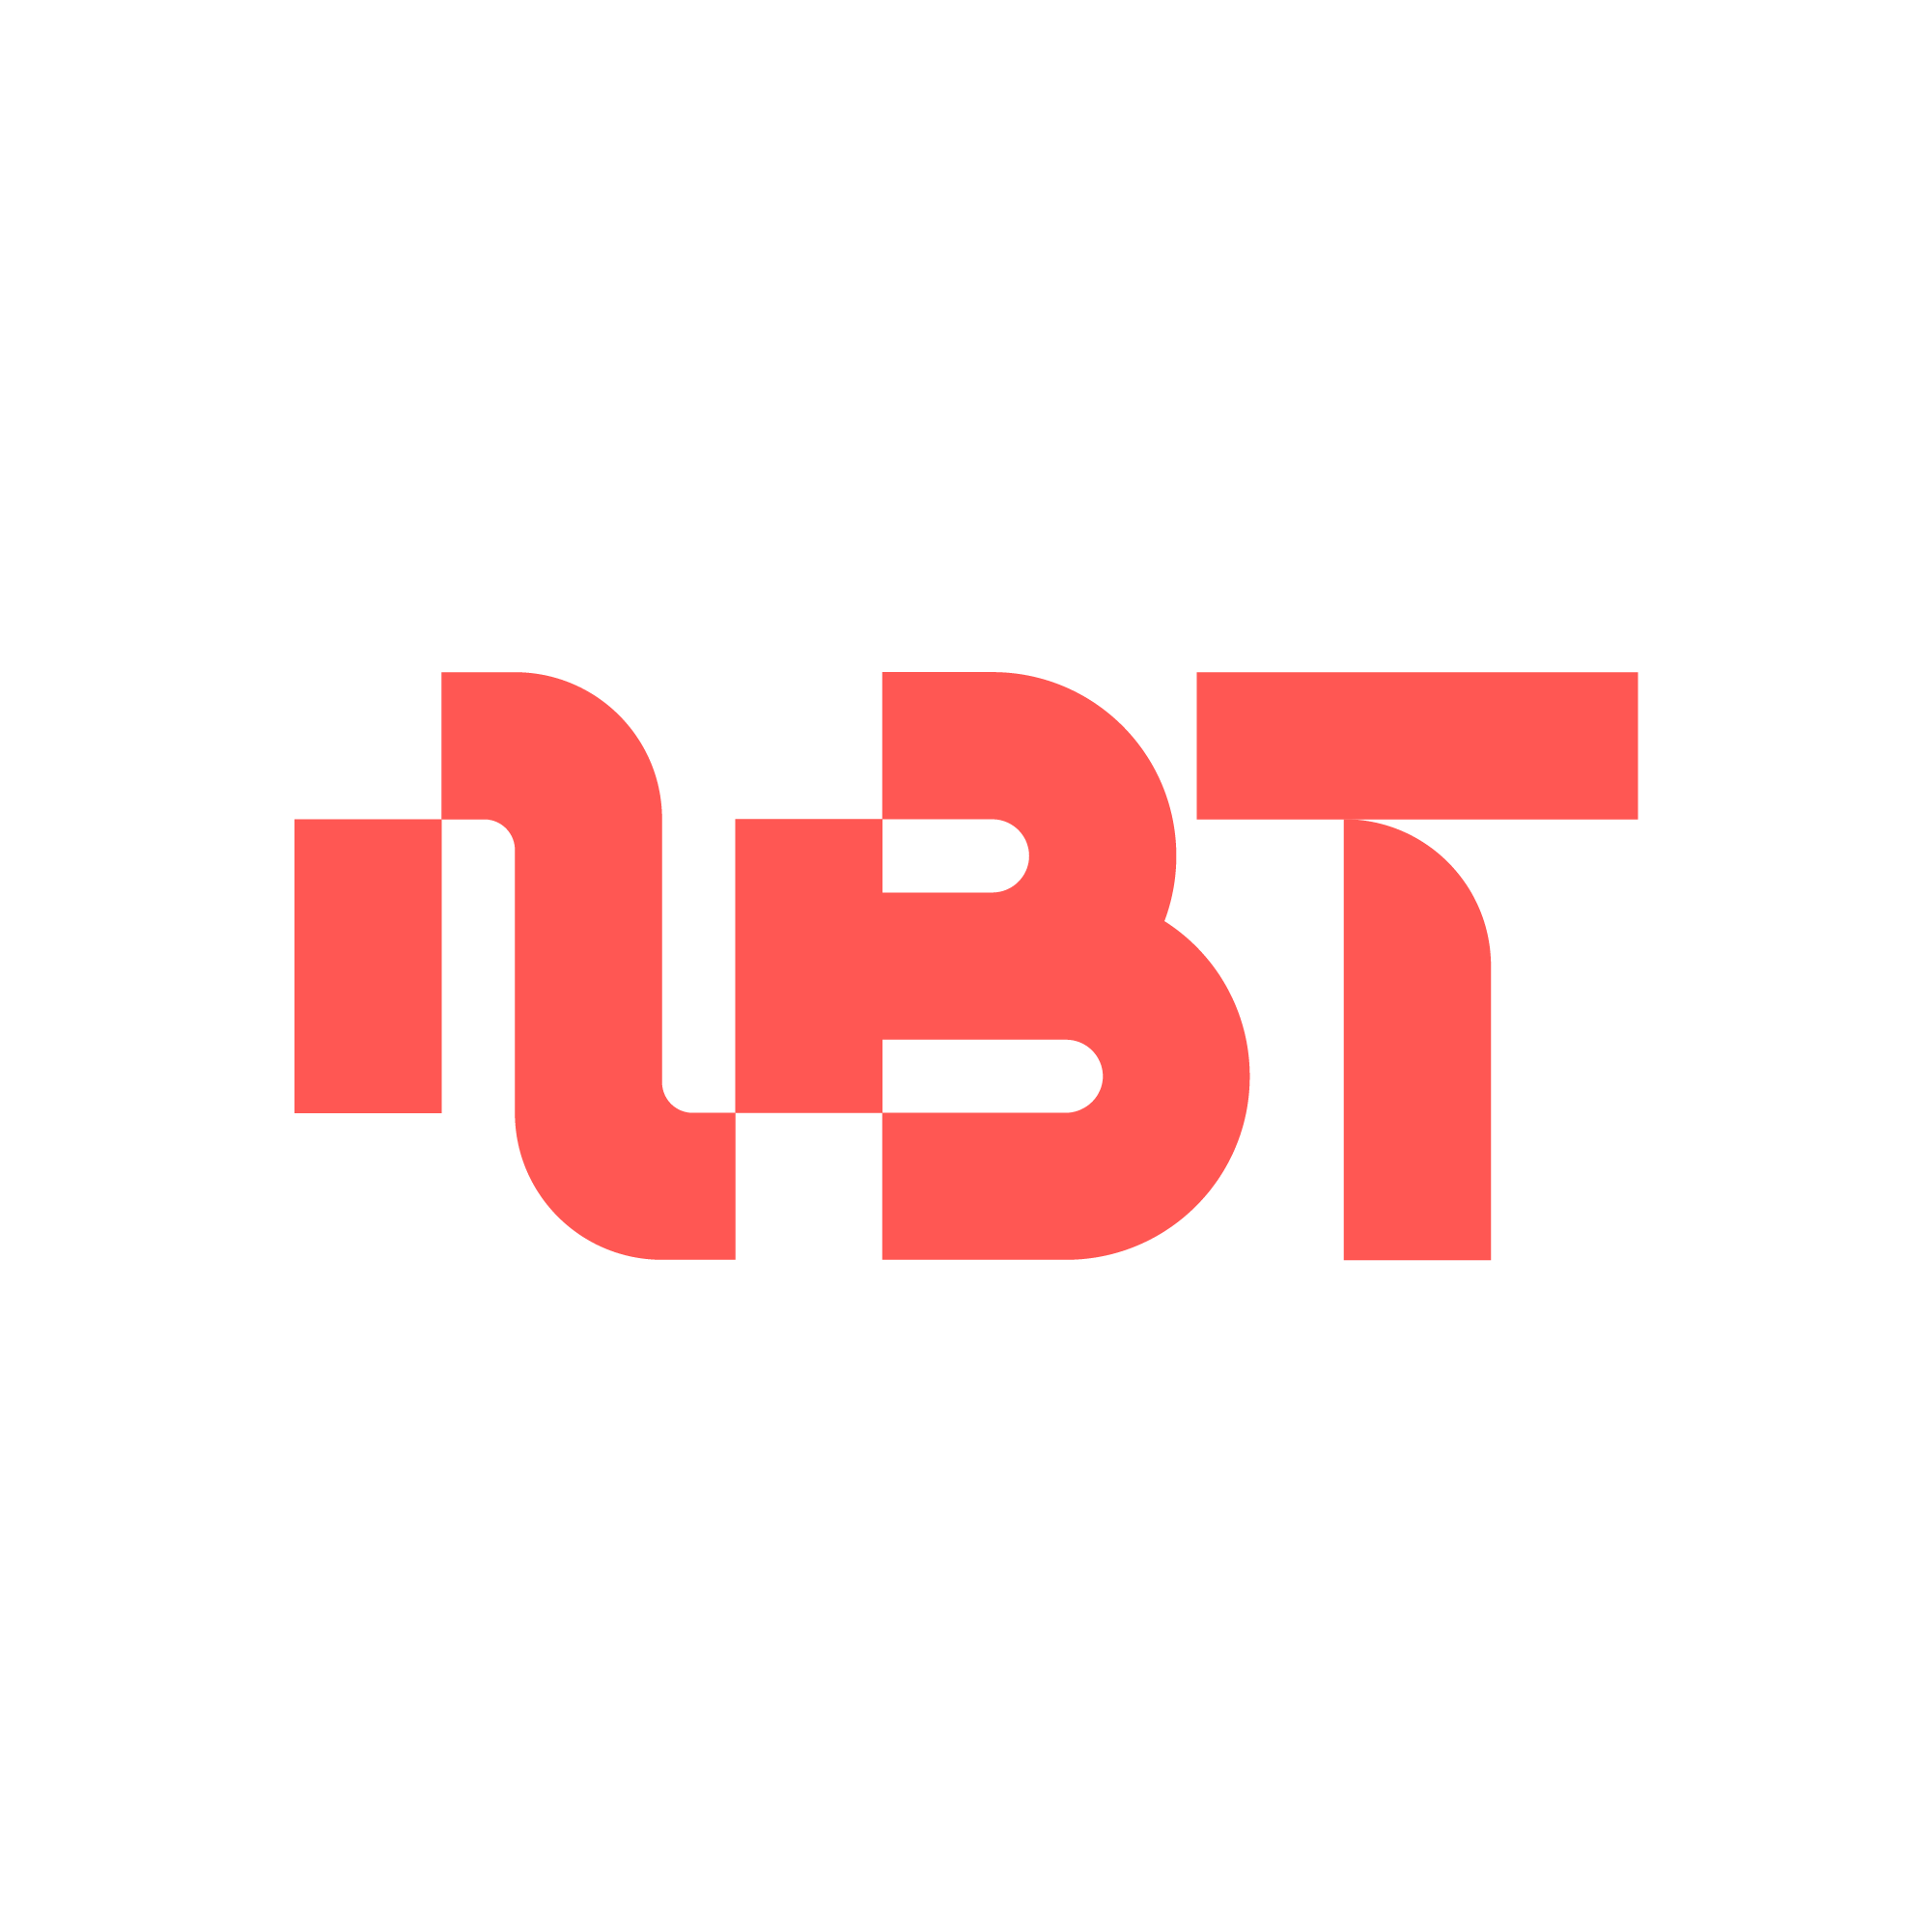 next-big-thing-logo